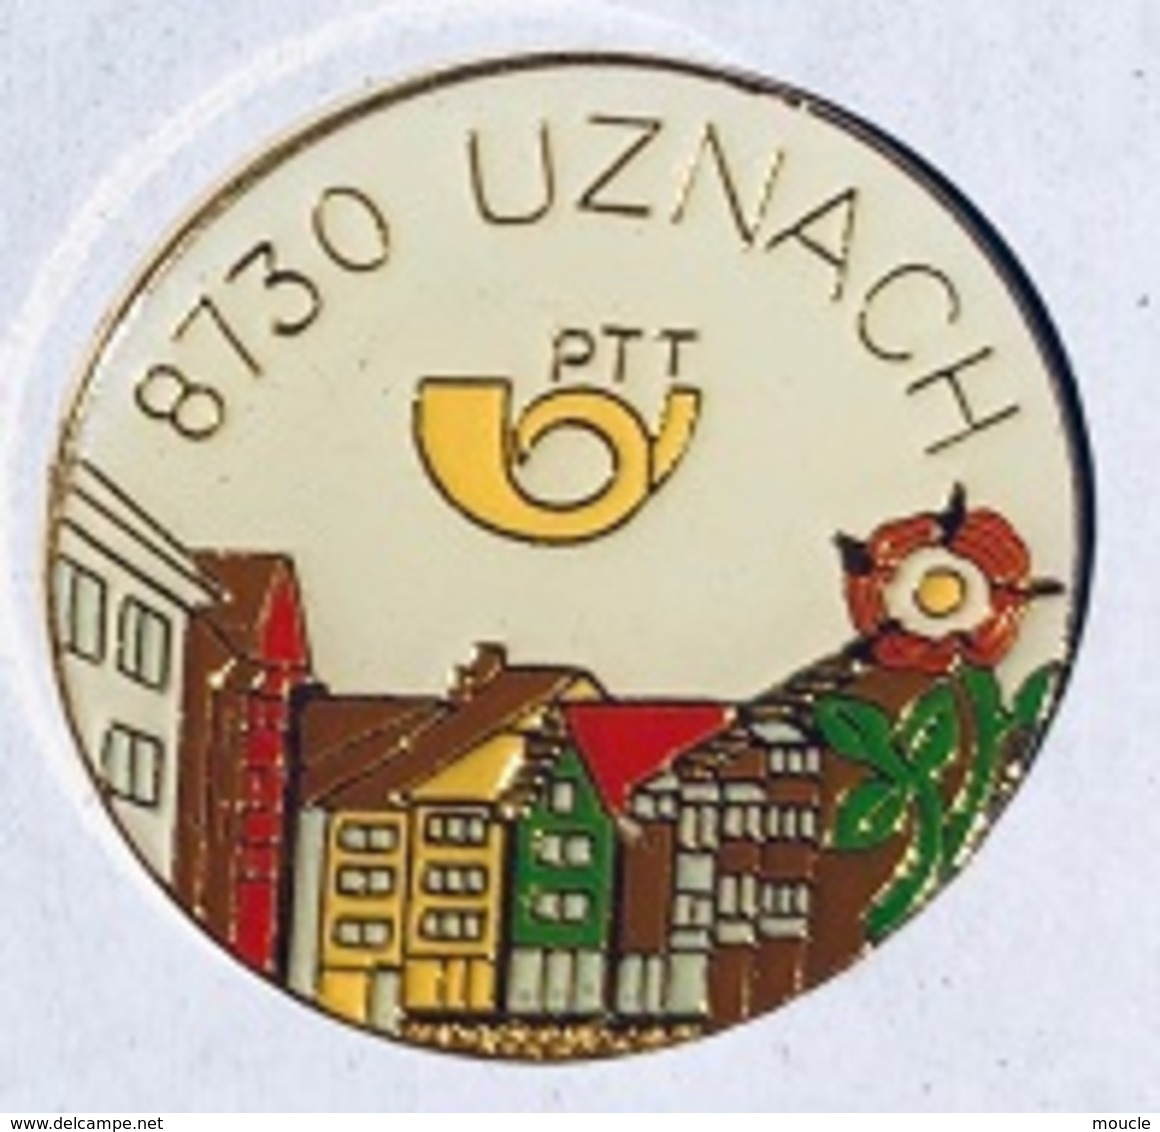 POSTE SUISSE - PTT - 8730 UZNACH - SCHWEIZ - SVIZZERA - SWITZERLAND - SUIZA - POST -                       (26) - Mail Services